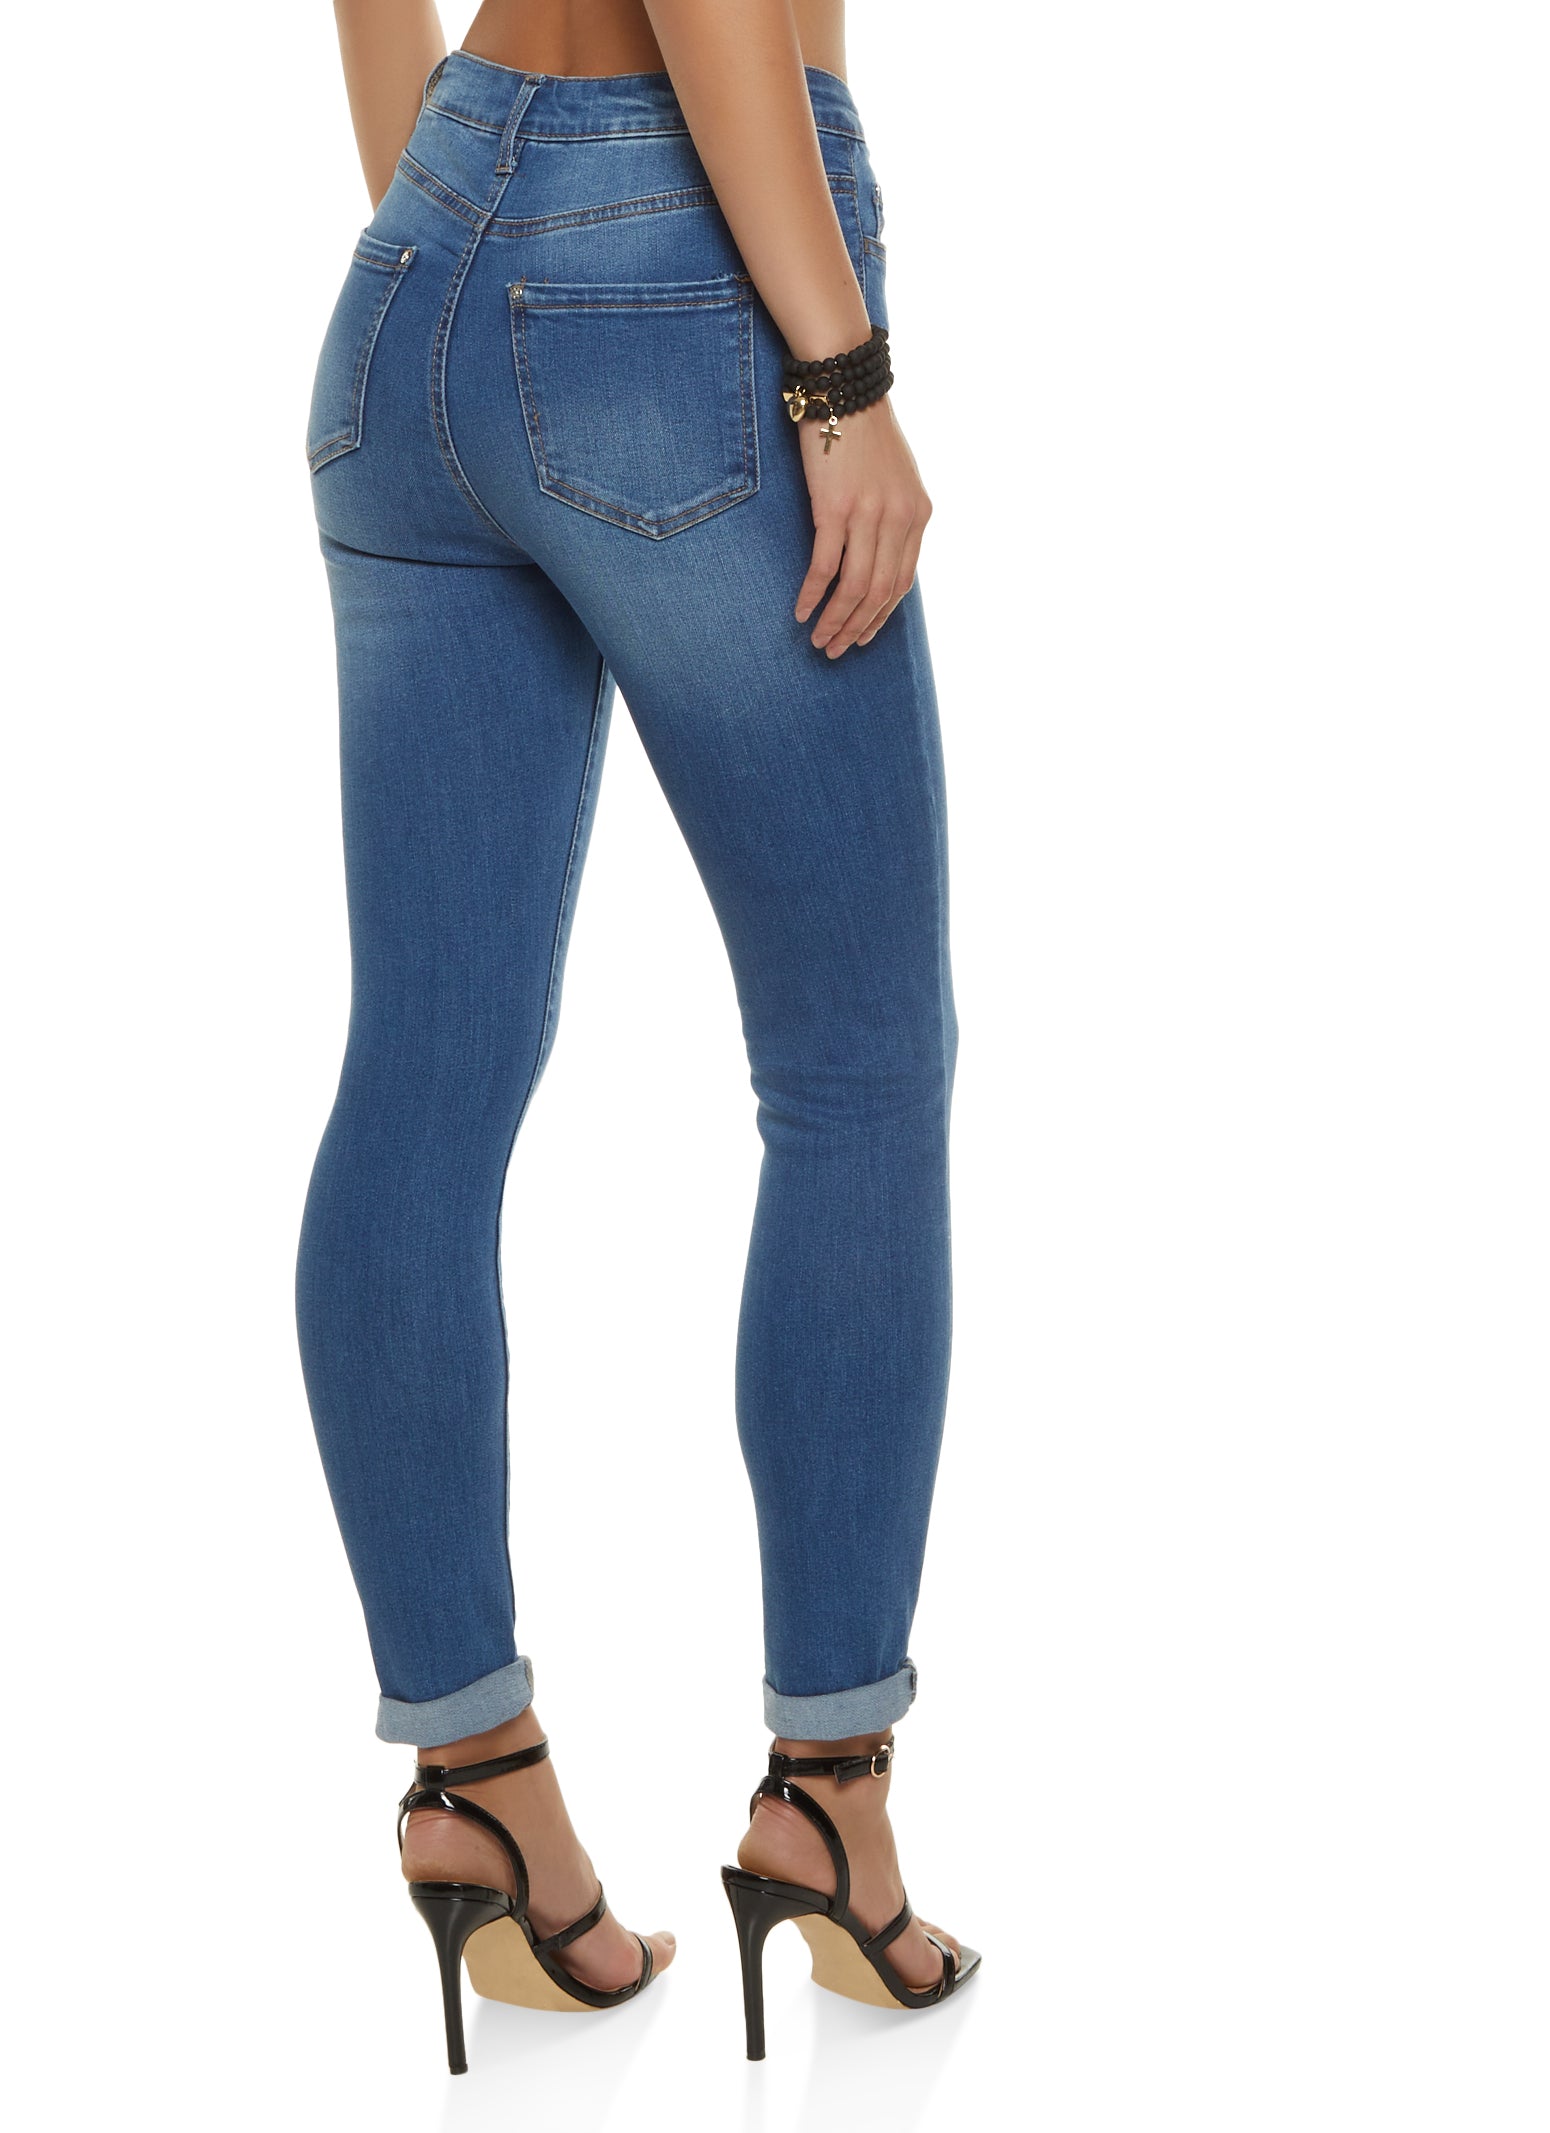 WAX Basic High Waisted Skinny Jeans